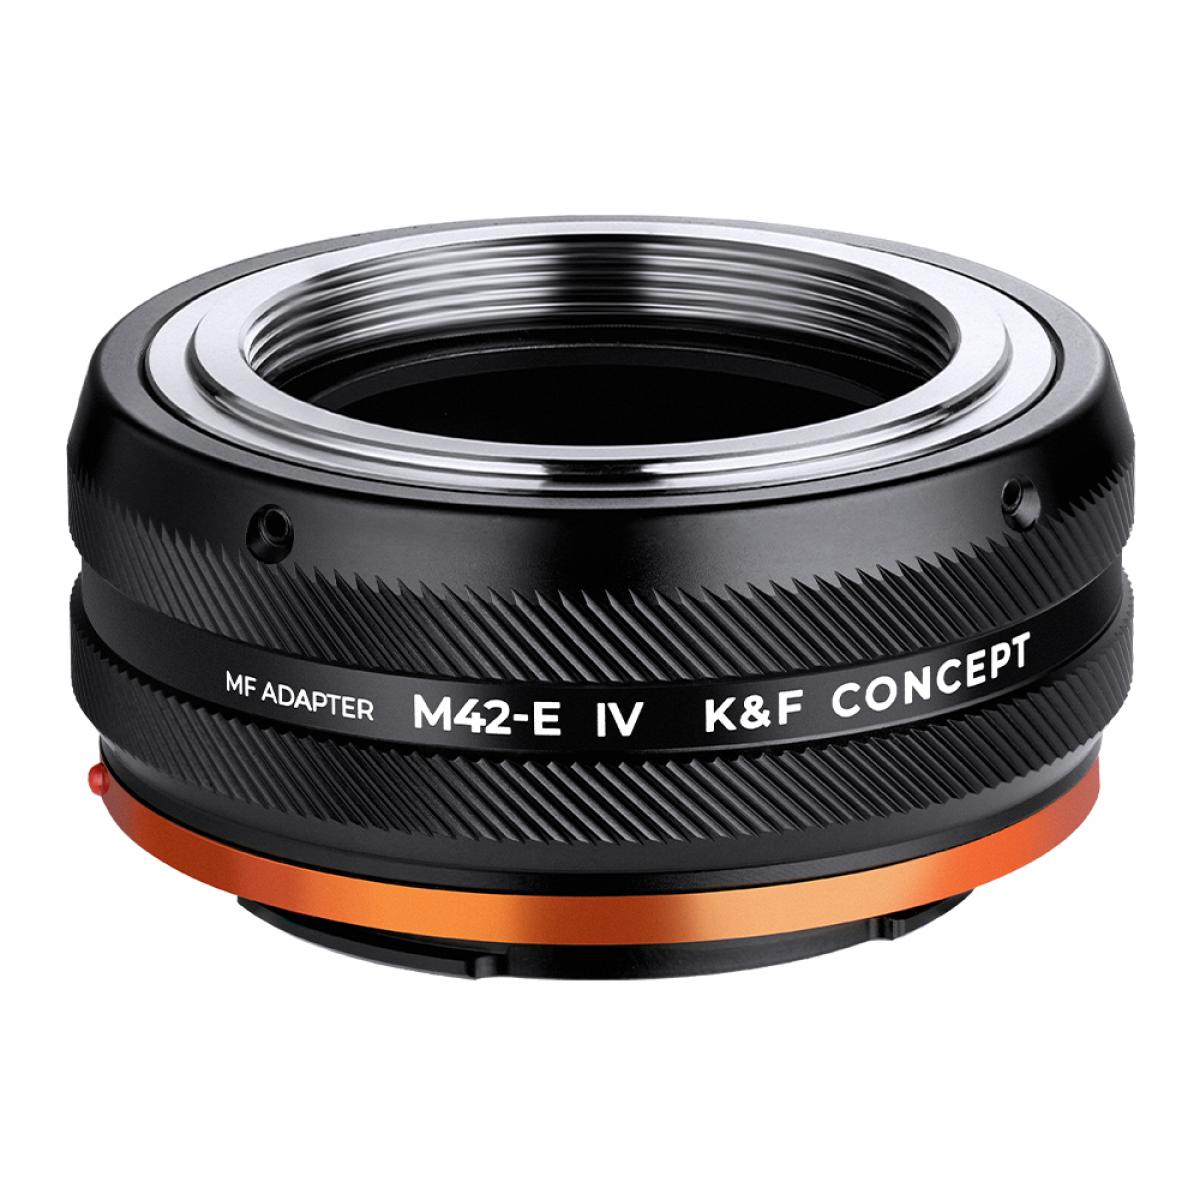 M42 レンズマウントアダプターの Sony E カメラ, M42-E IV PRO - K&F